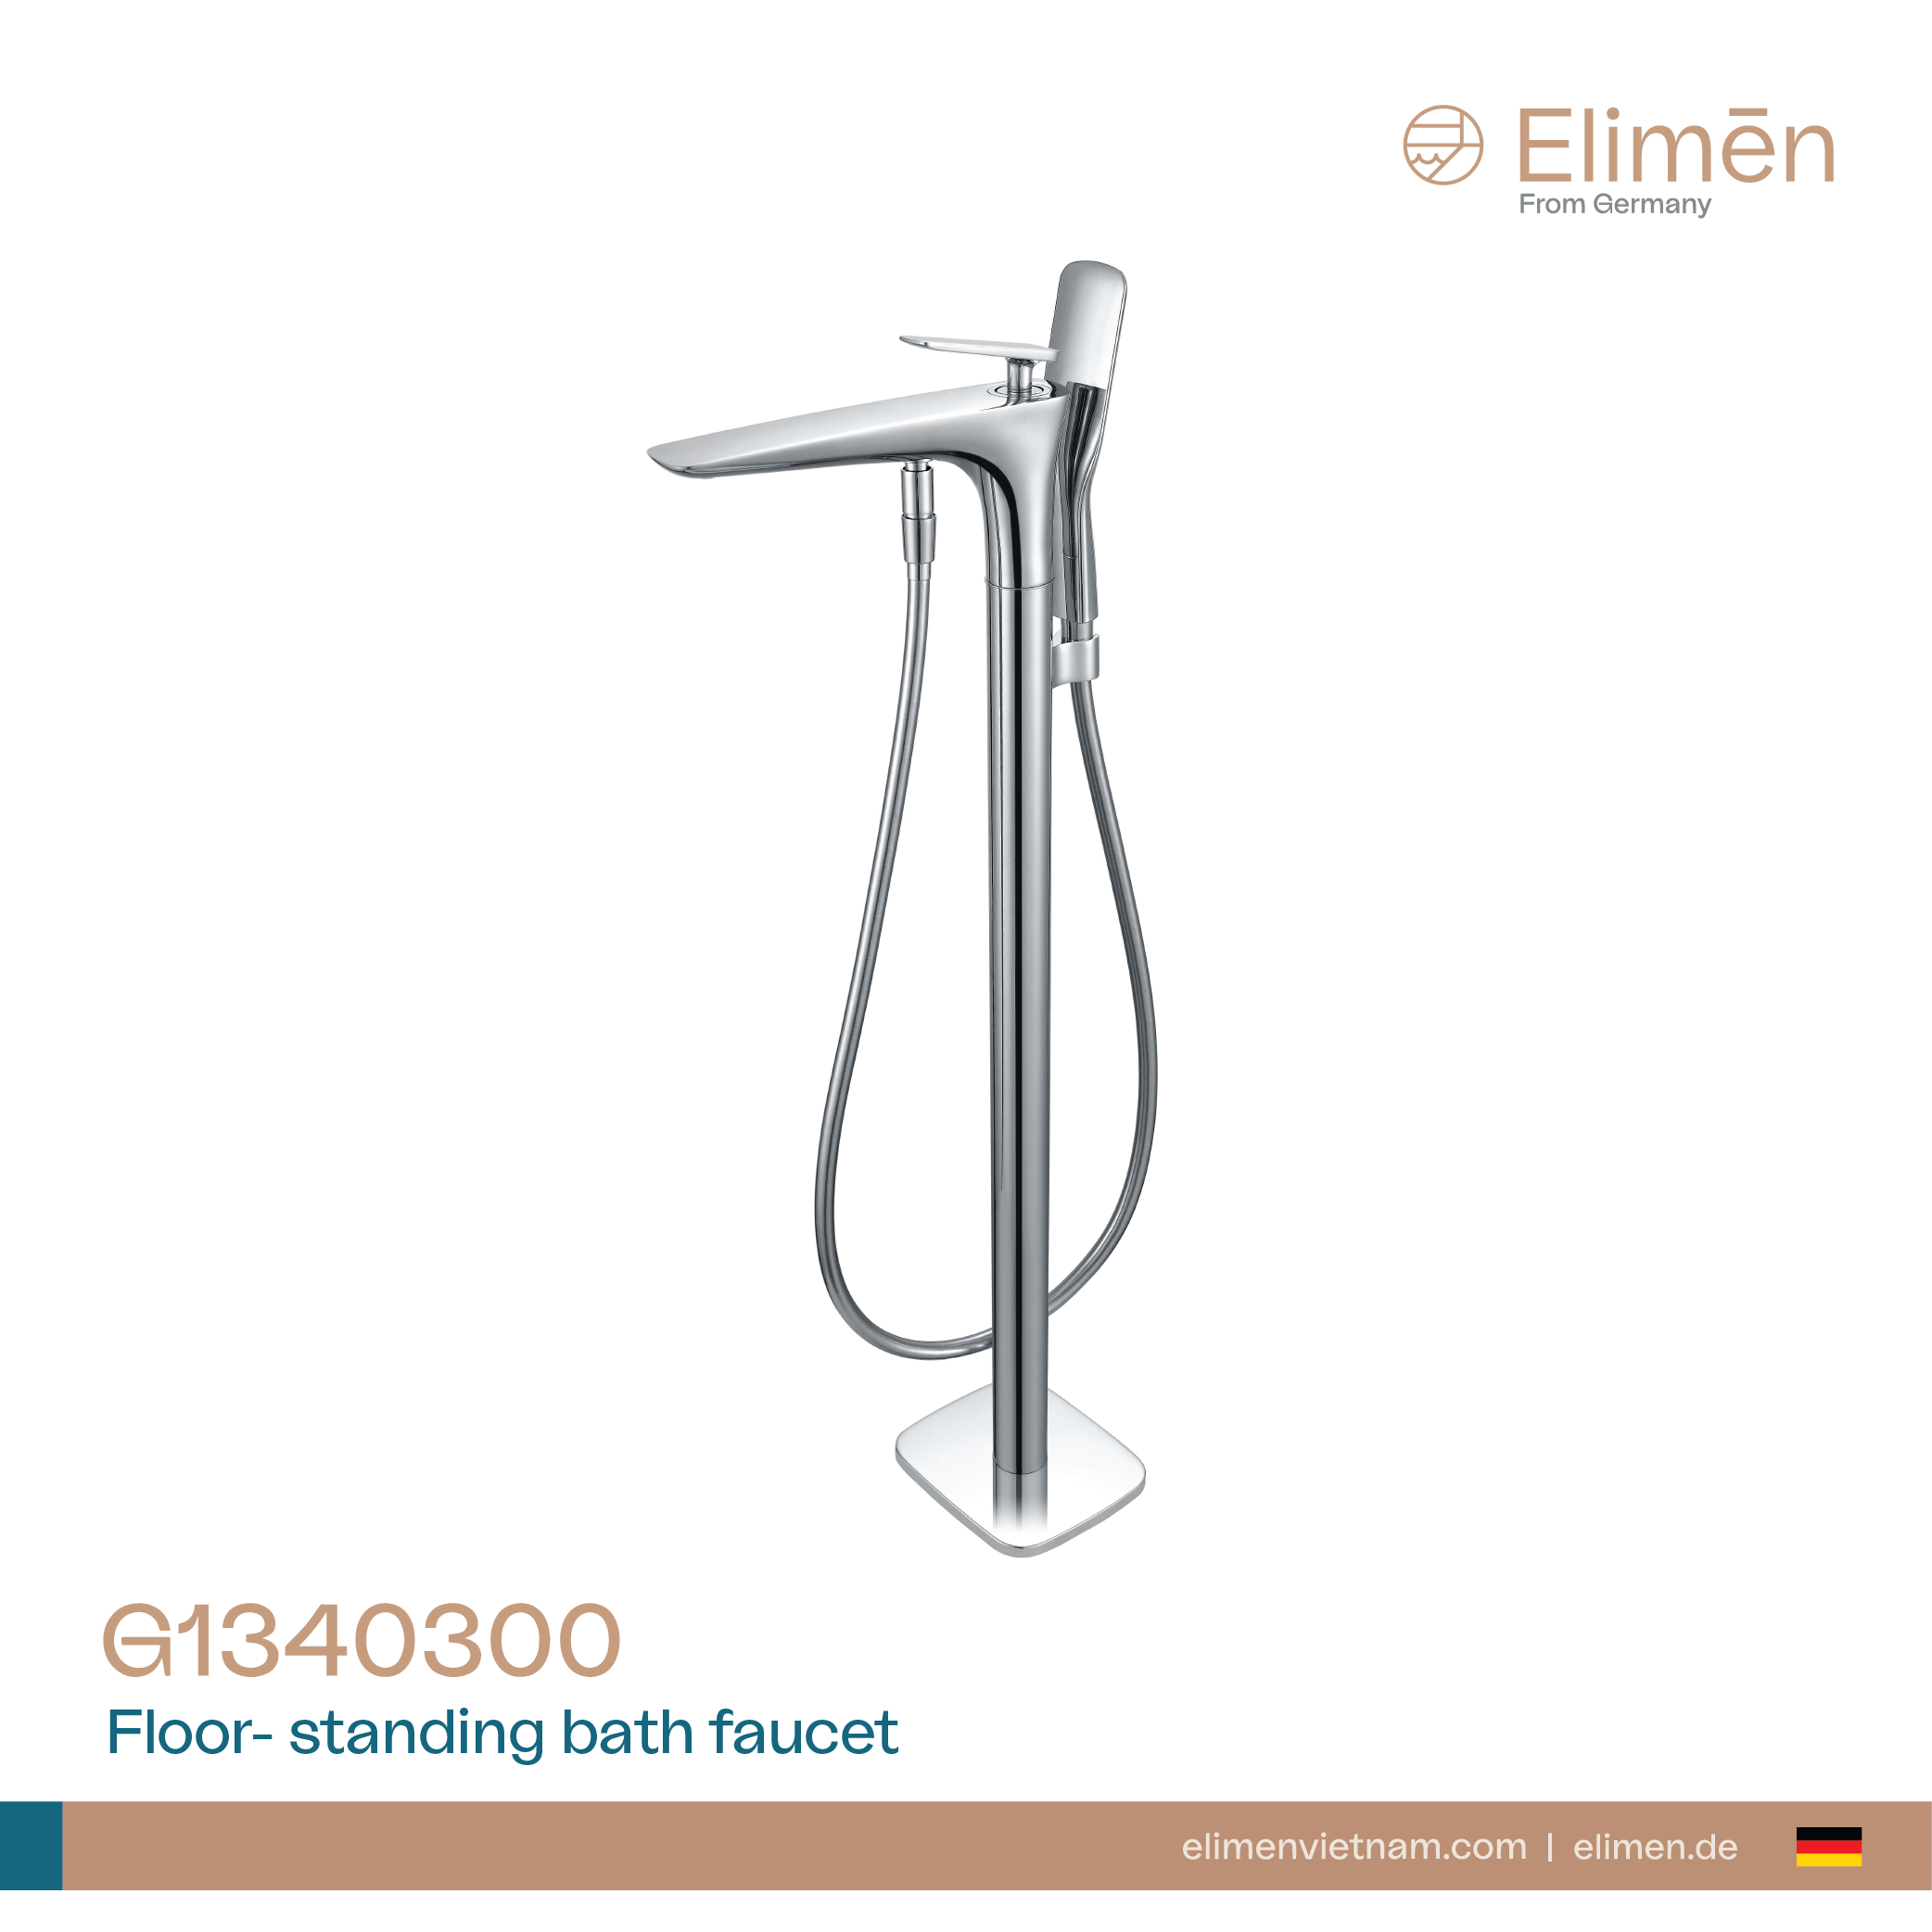 Elimen floor standing bath faucet - Code G1340300